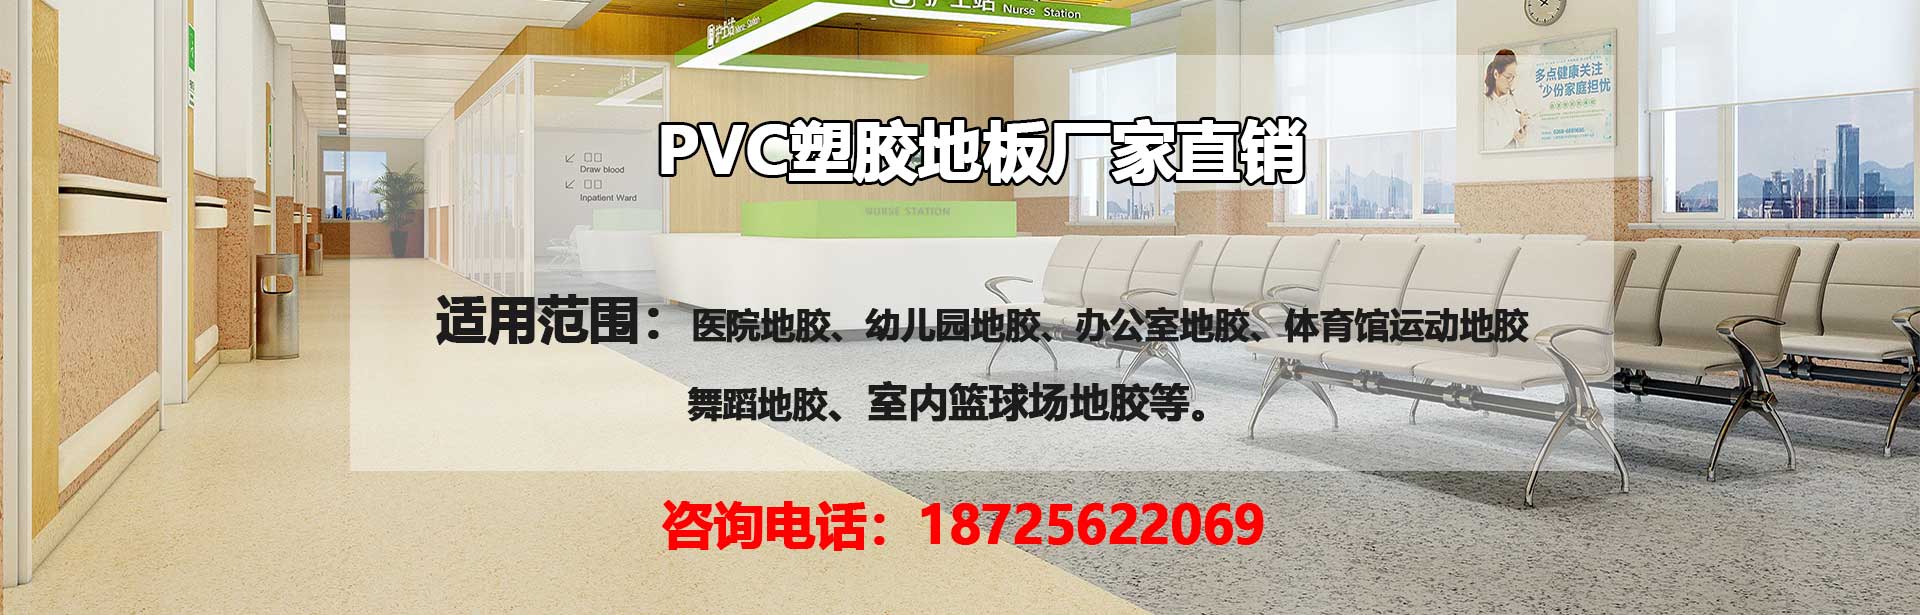 庆阳PVC塑胶地板